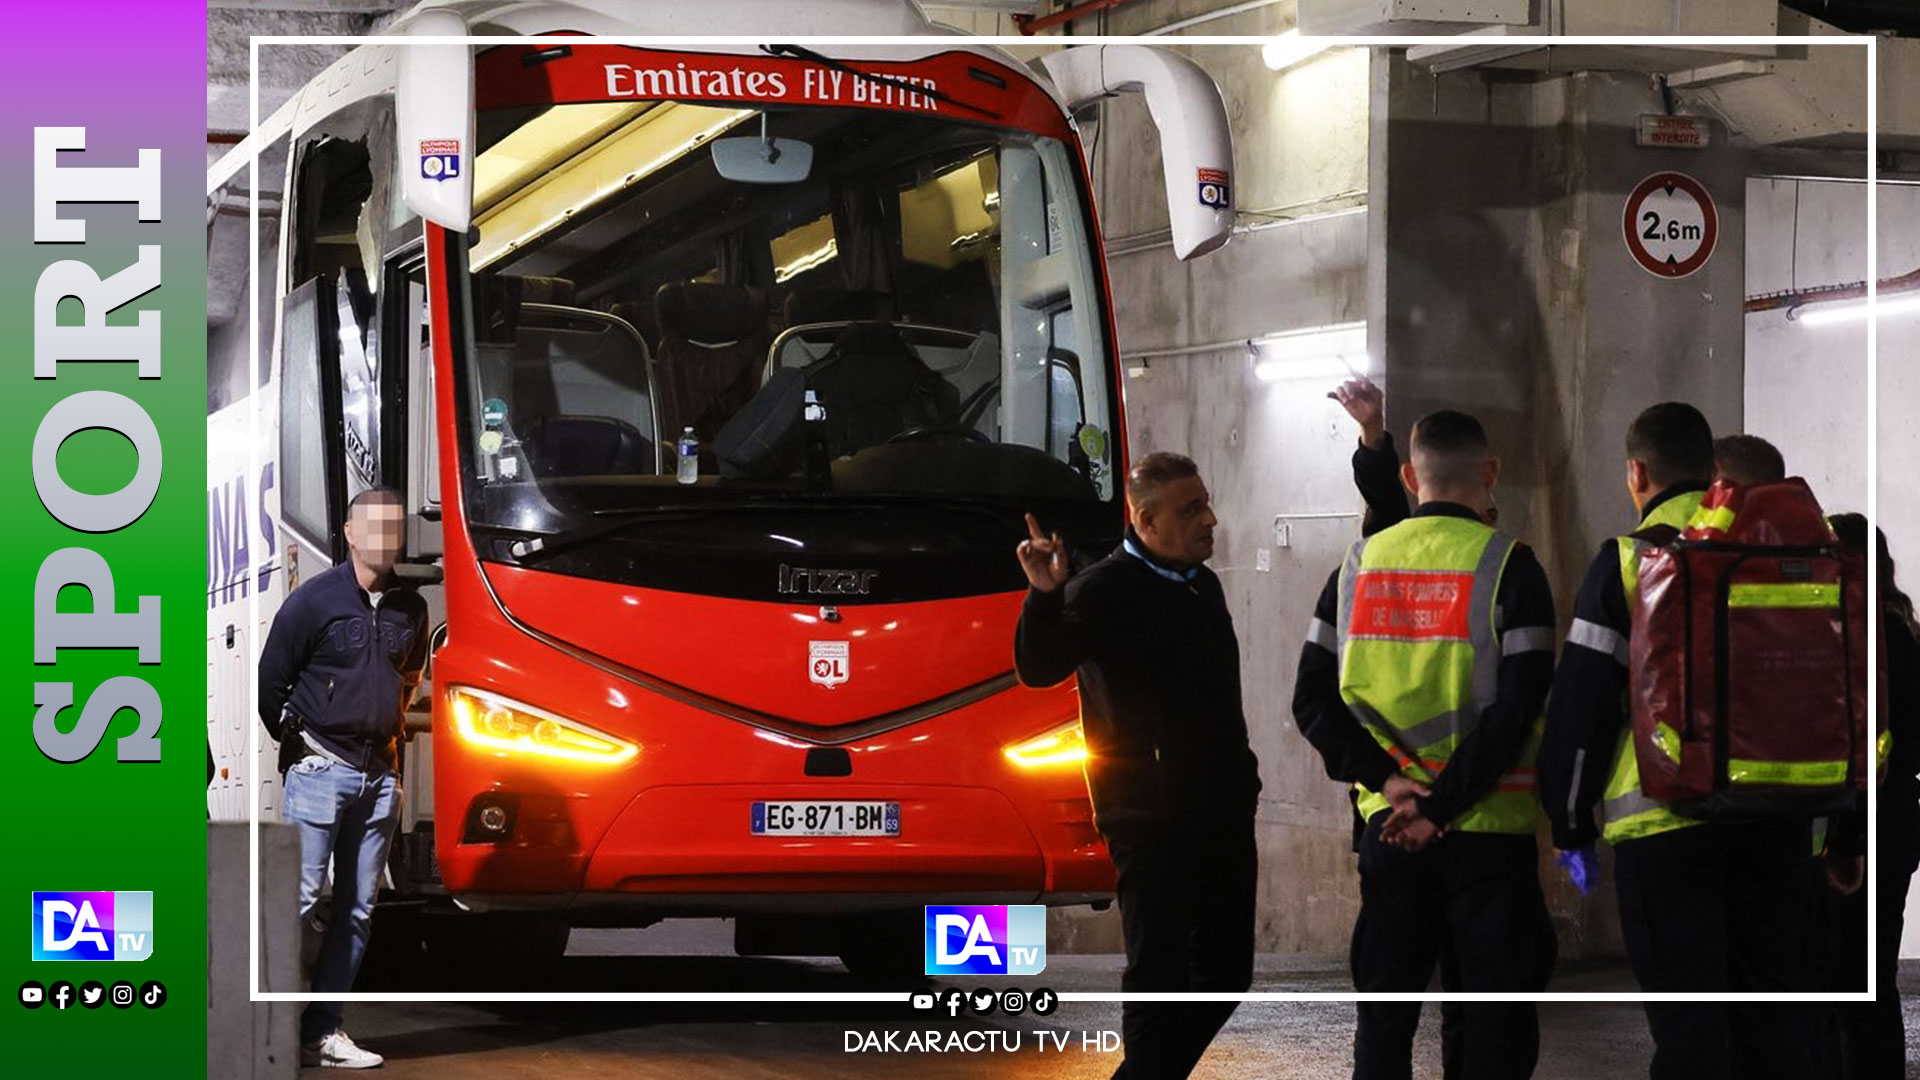 France - Ligue 1 : Caillassage du bus de L’OL, un supporteur de l’OM en détention, contrôle judiciaire pour l’autre prévenu…